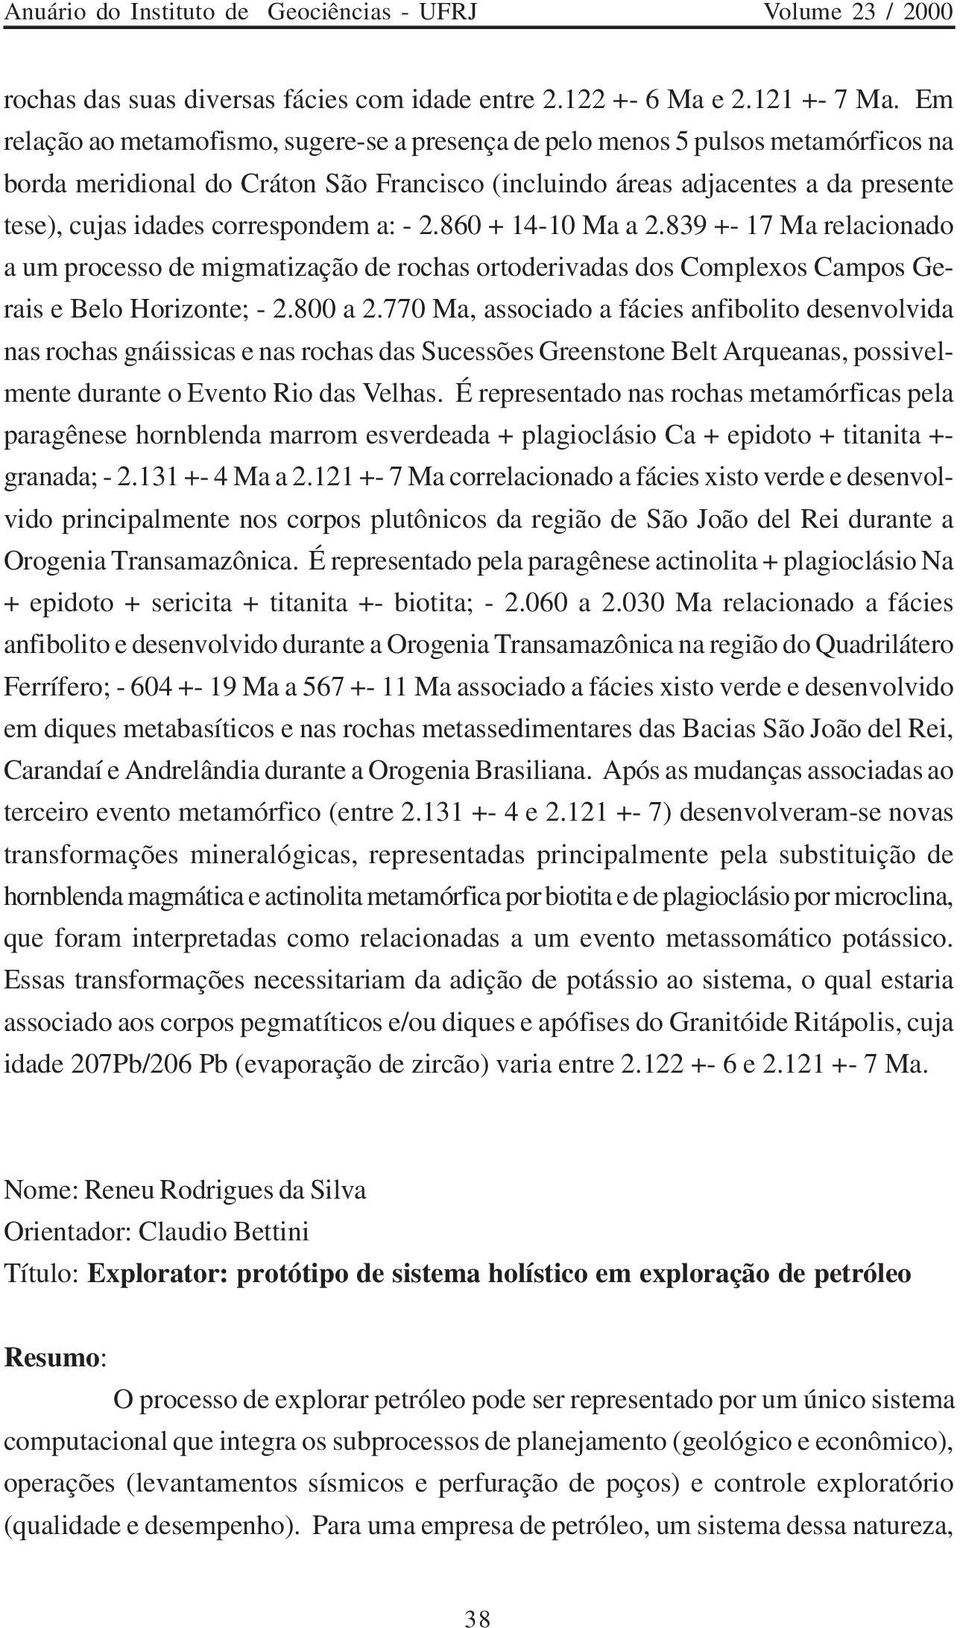 correspondem a: - 2.860 + 14-10 Ma a 2.839 +- 17 Ma relacionado a um processo de migmatização de rochas ortoderivadas dos Complexos Campos Gerais e Belo Horizonte; - 2.800 a 2.